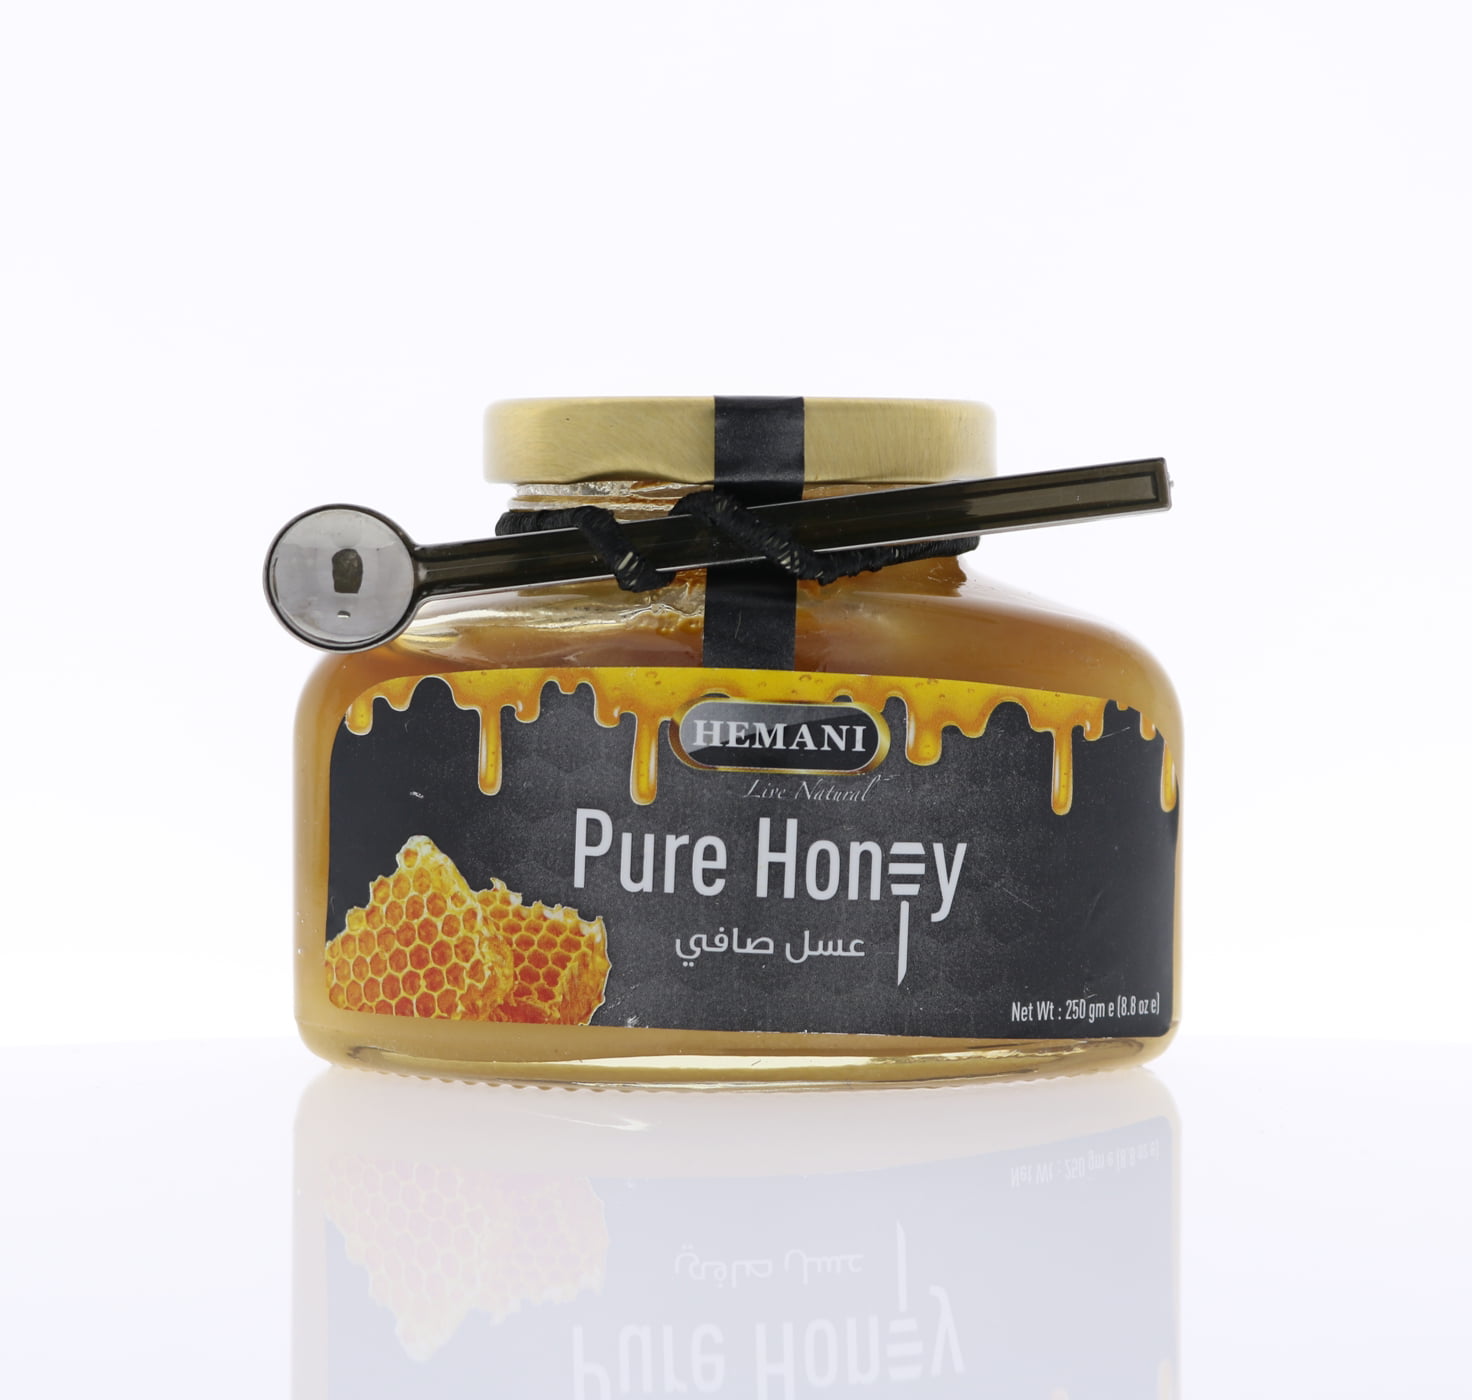 Black Horse Vital Honey-Africa